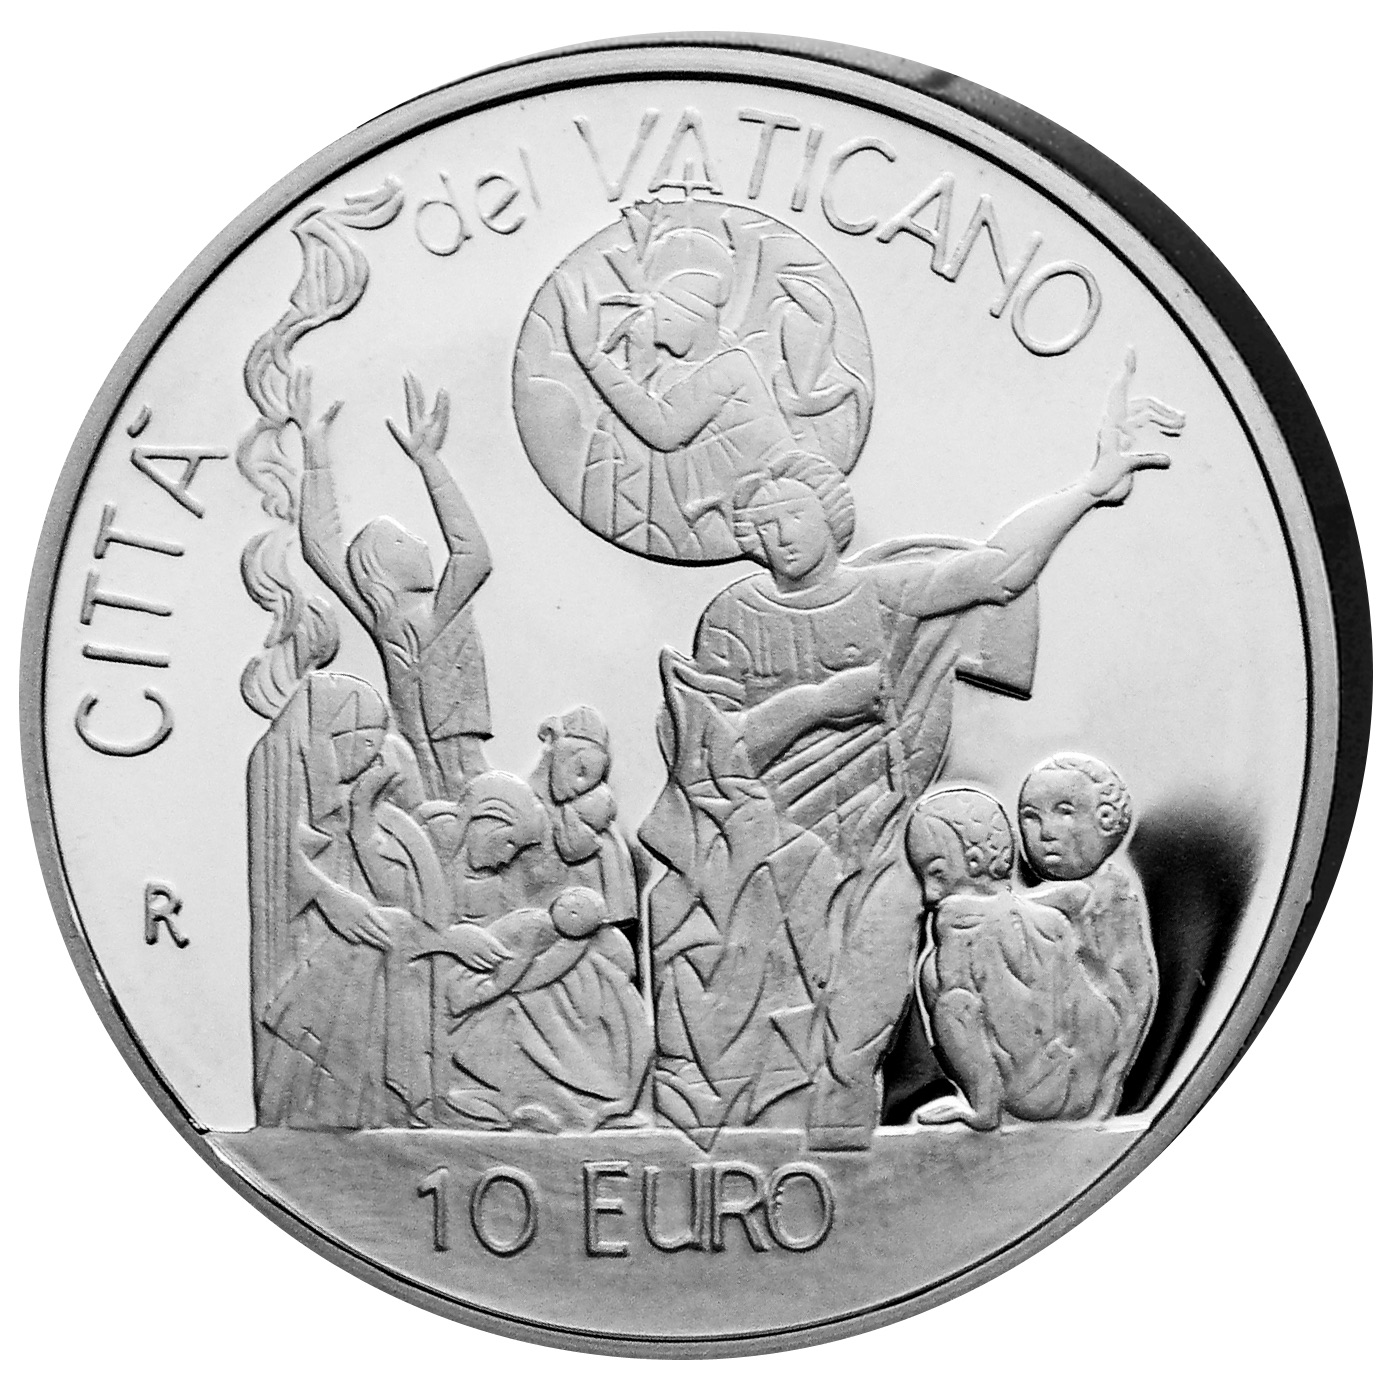 VA 10 Euro 2002 R